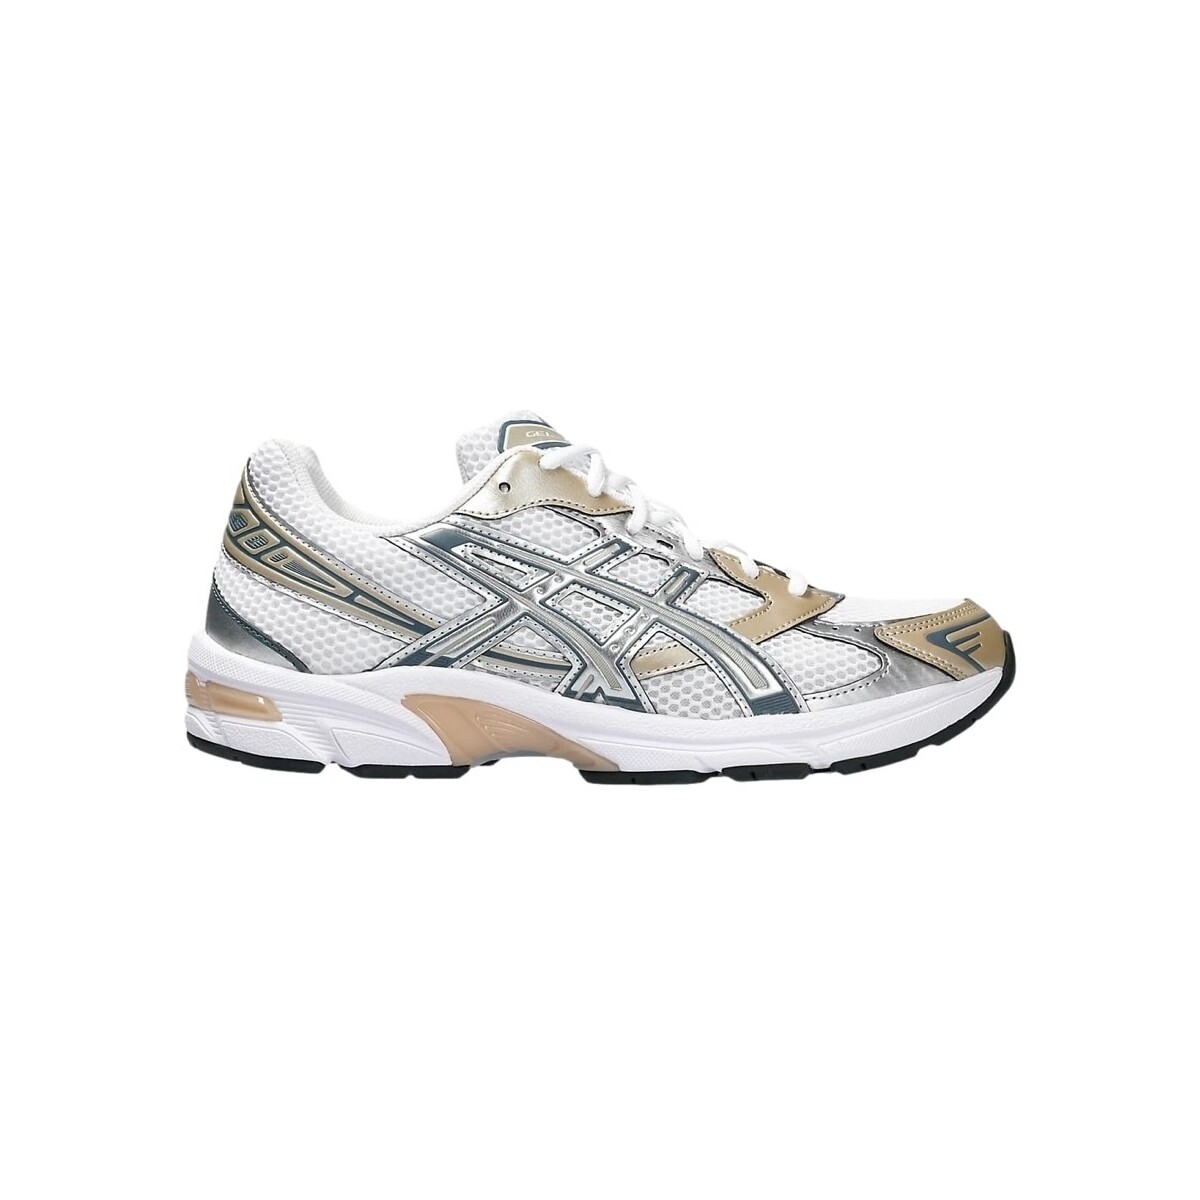 Sneakers Asics Gel-1130 – White/Woodcrepe